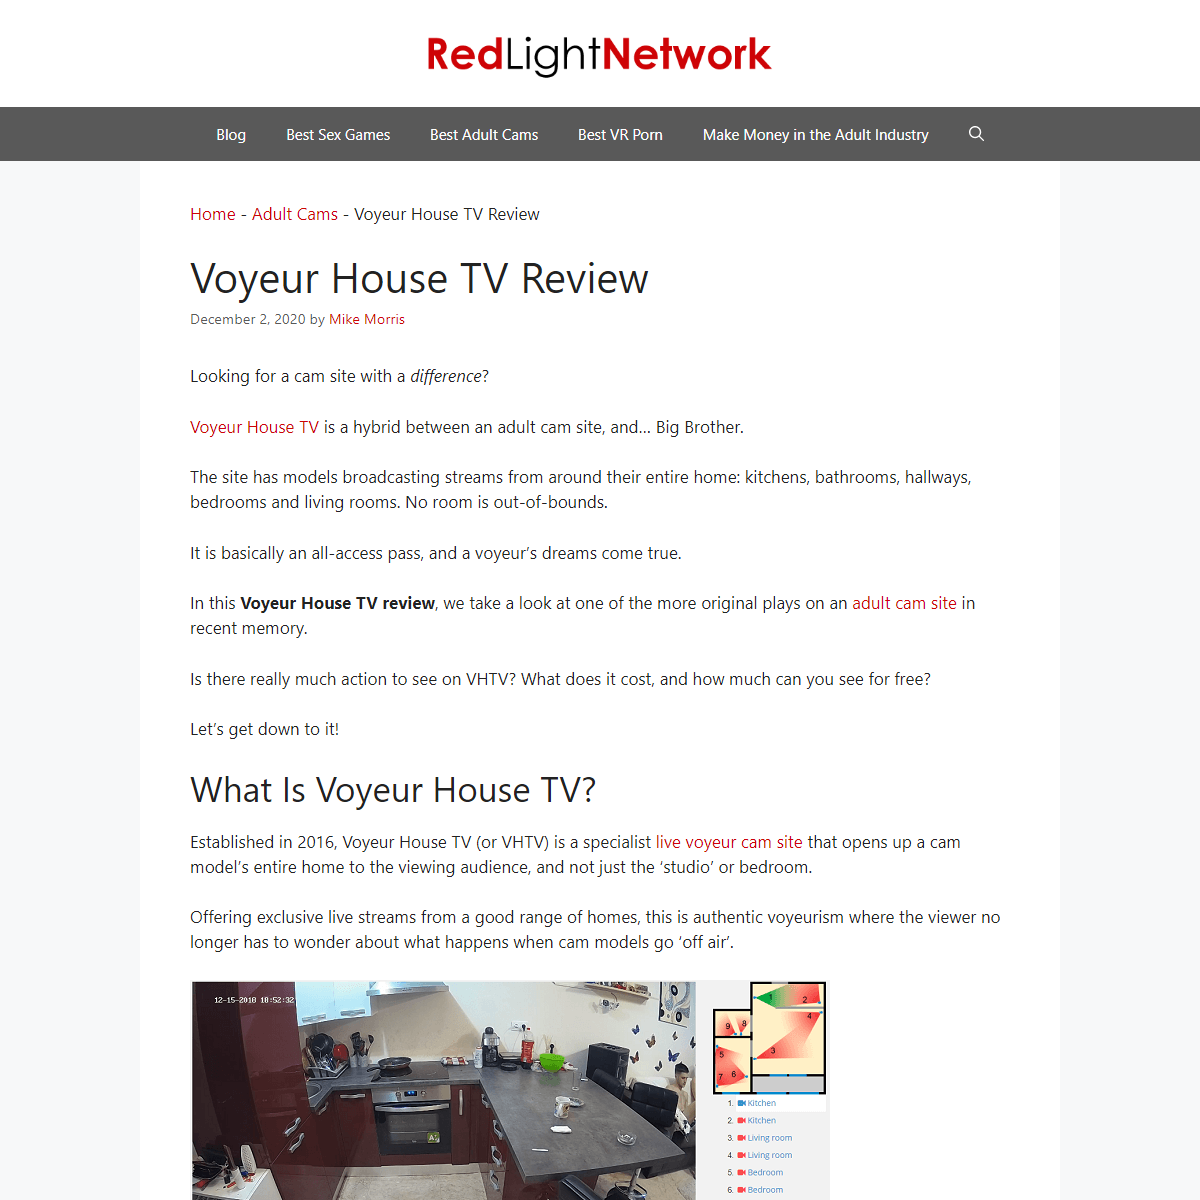 A complete backup of https://redlightnetwork.net/voyeur-house-tv-review/